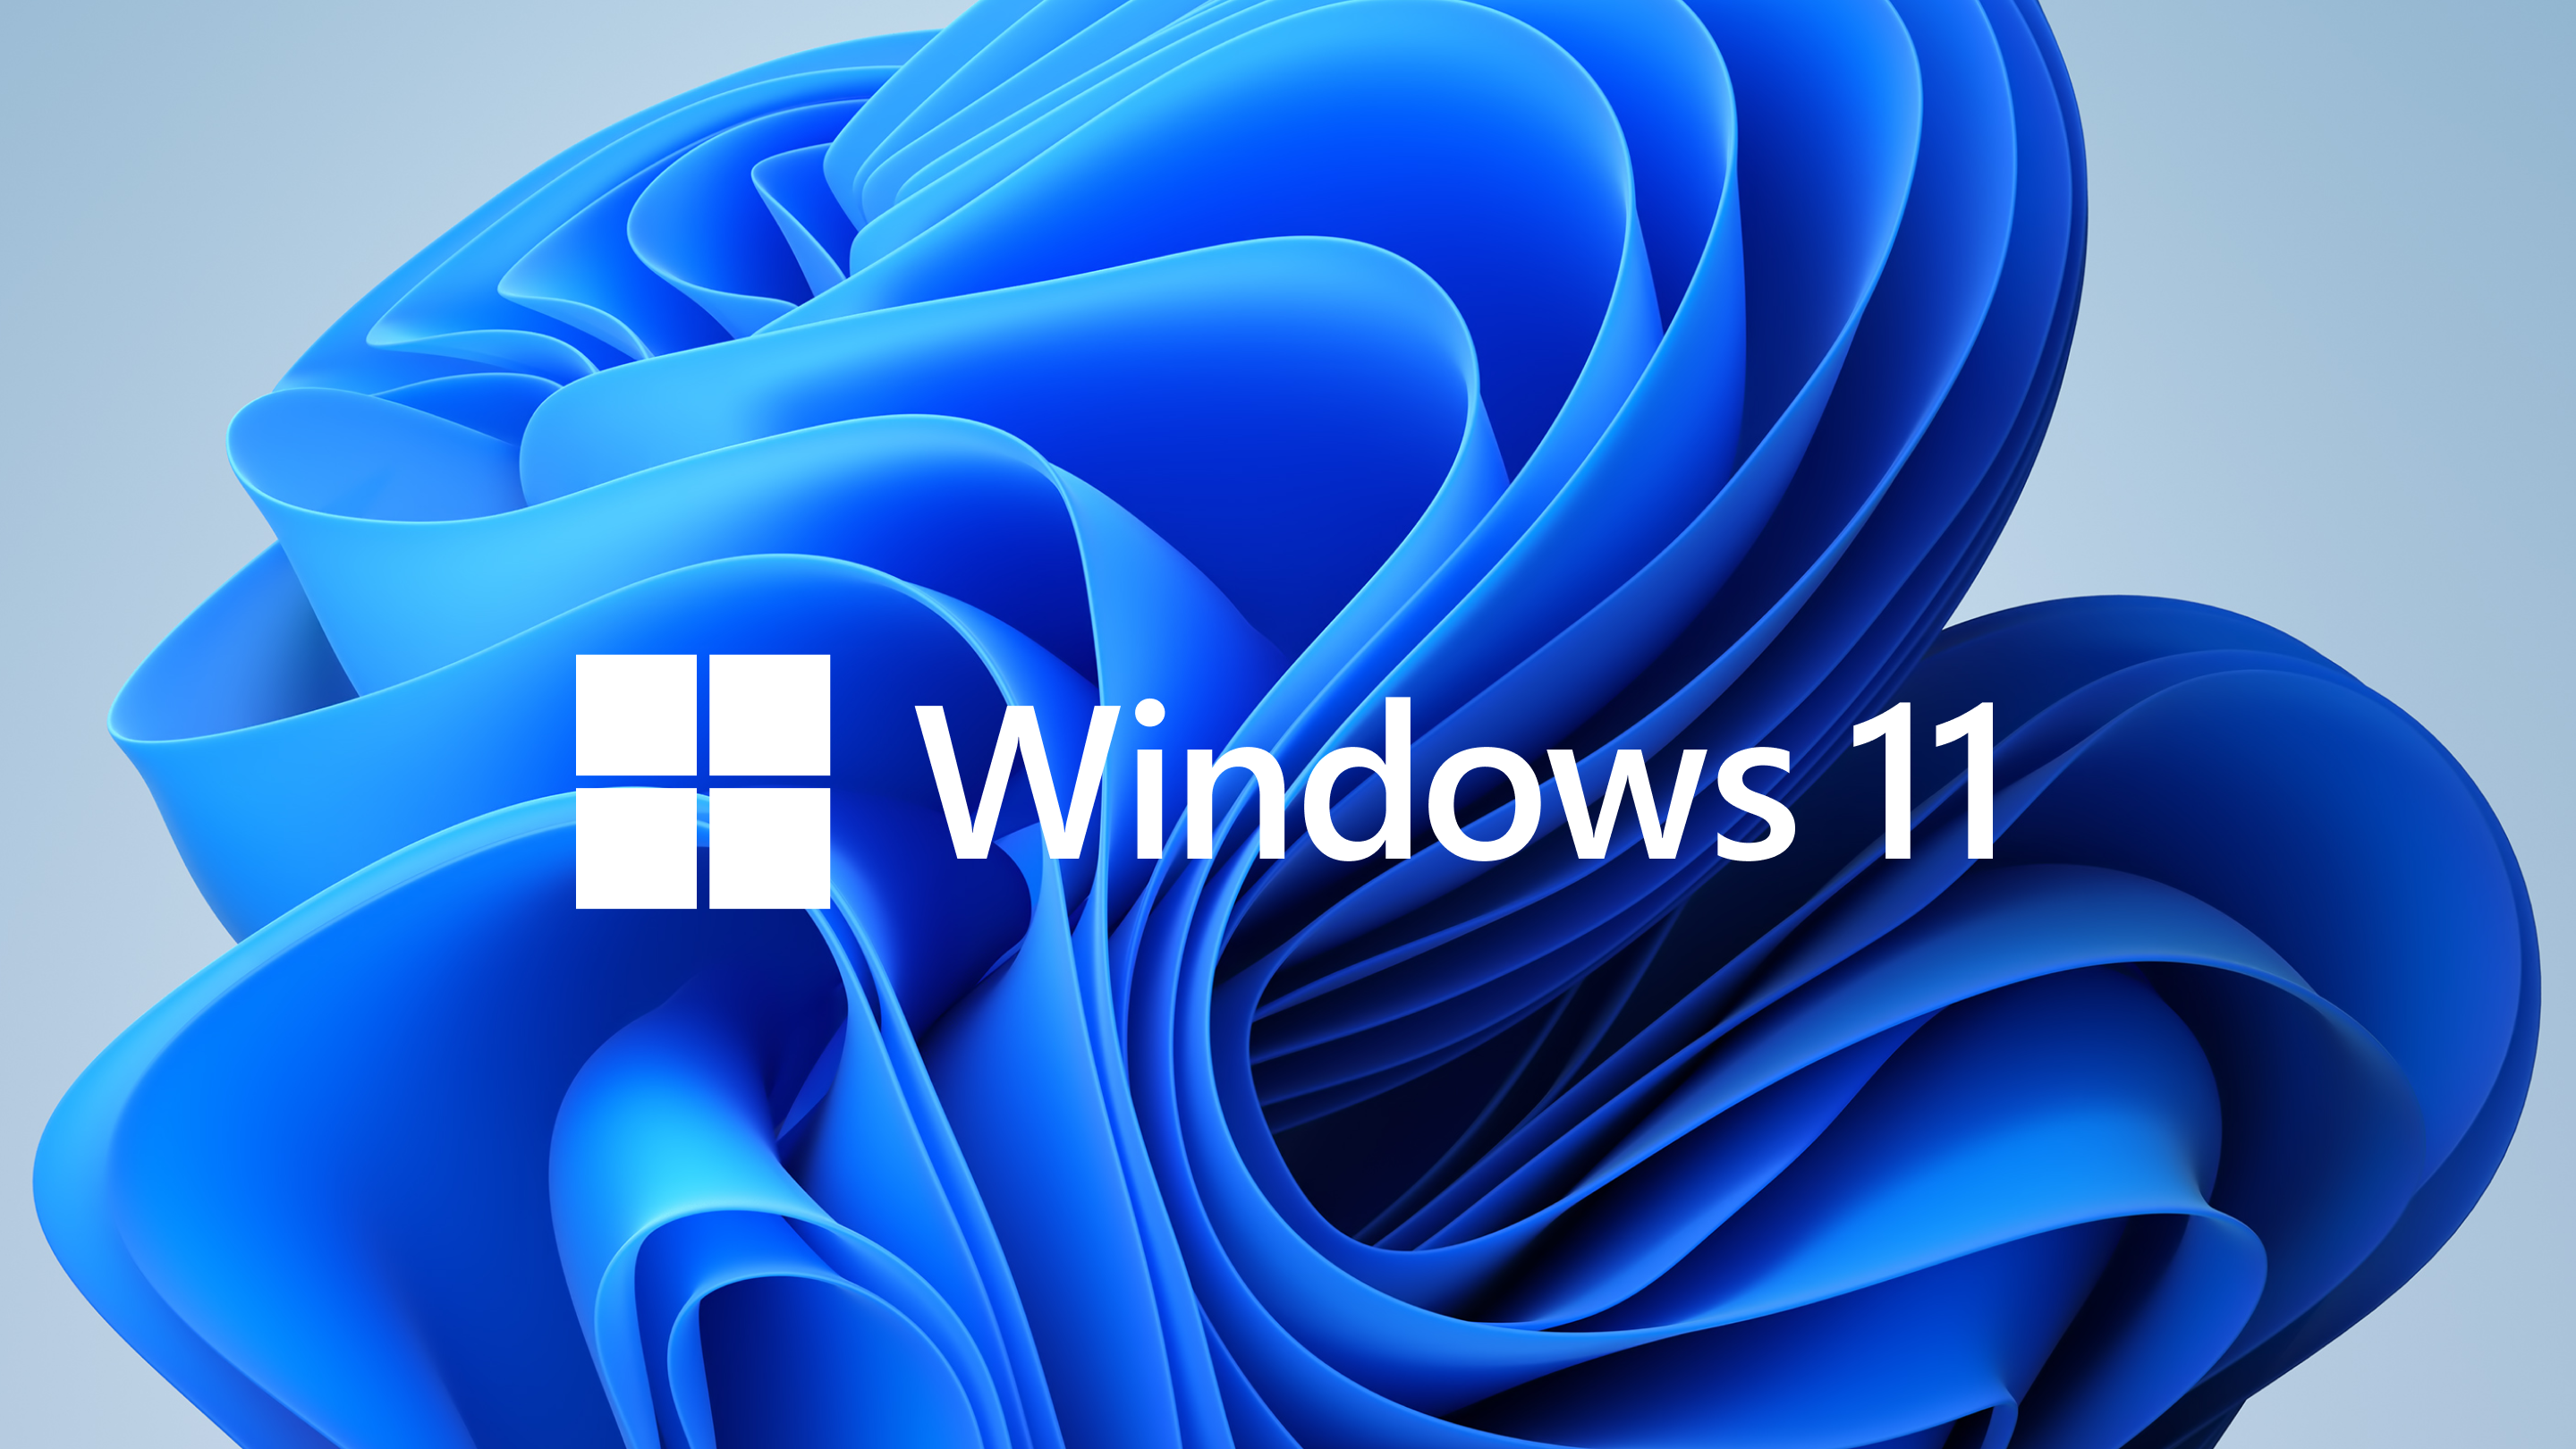 Microsoft warnt, dass neue Testversionen von Windows 11 Probleme verursachen könnten